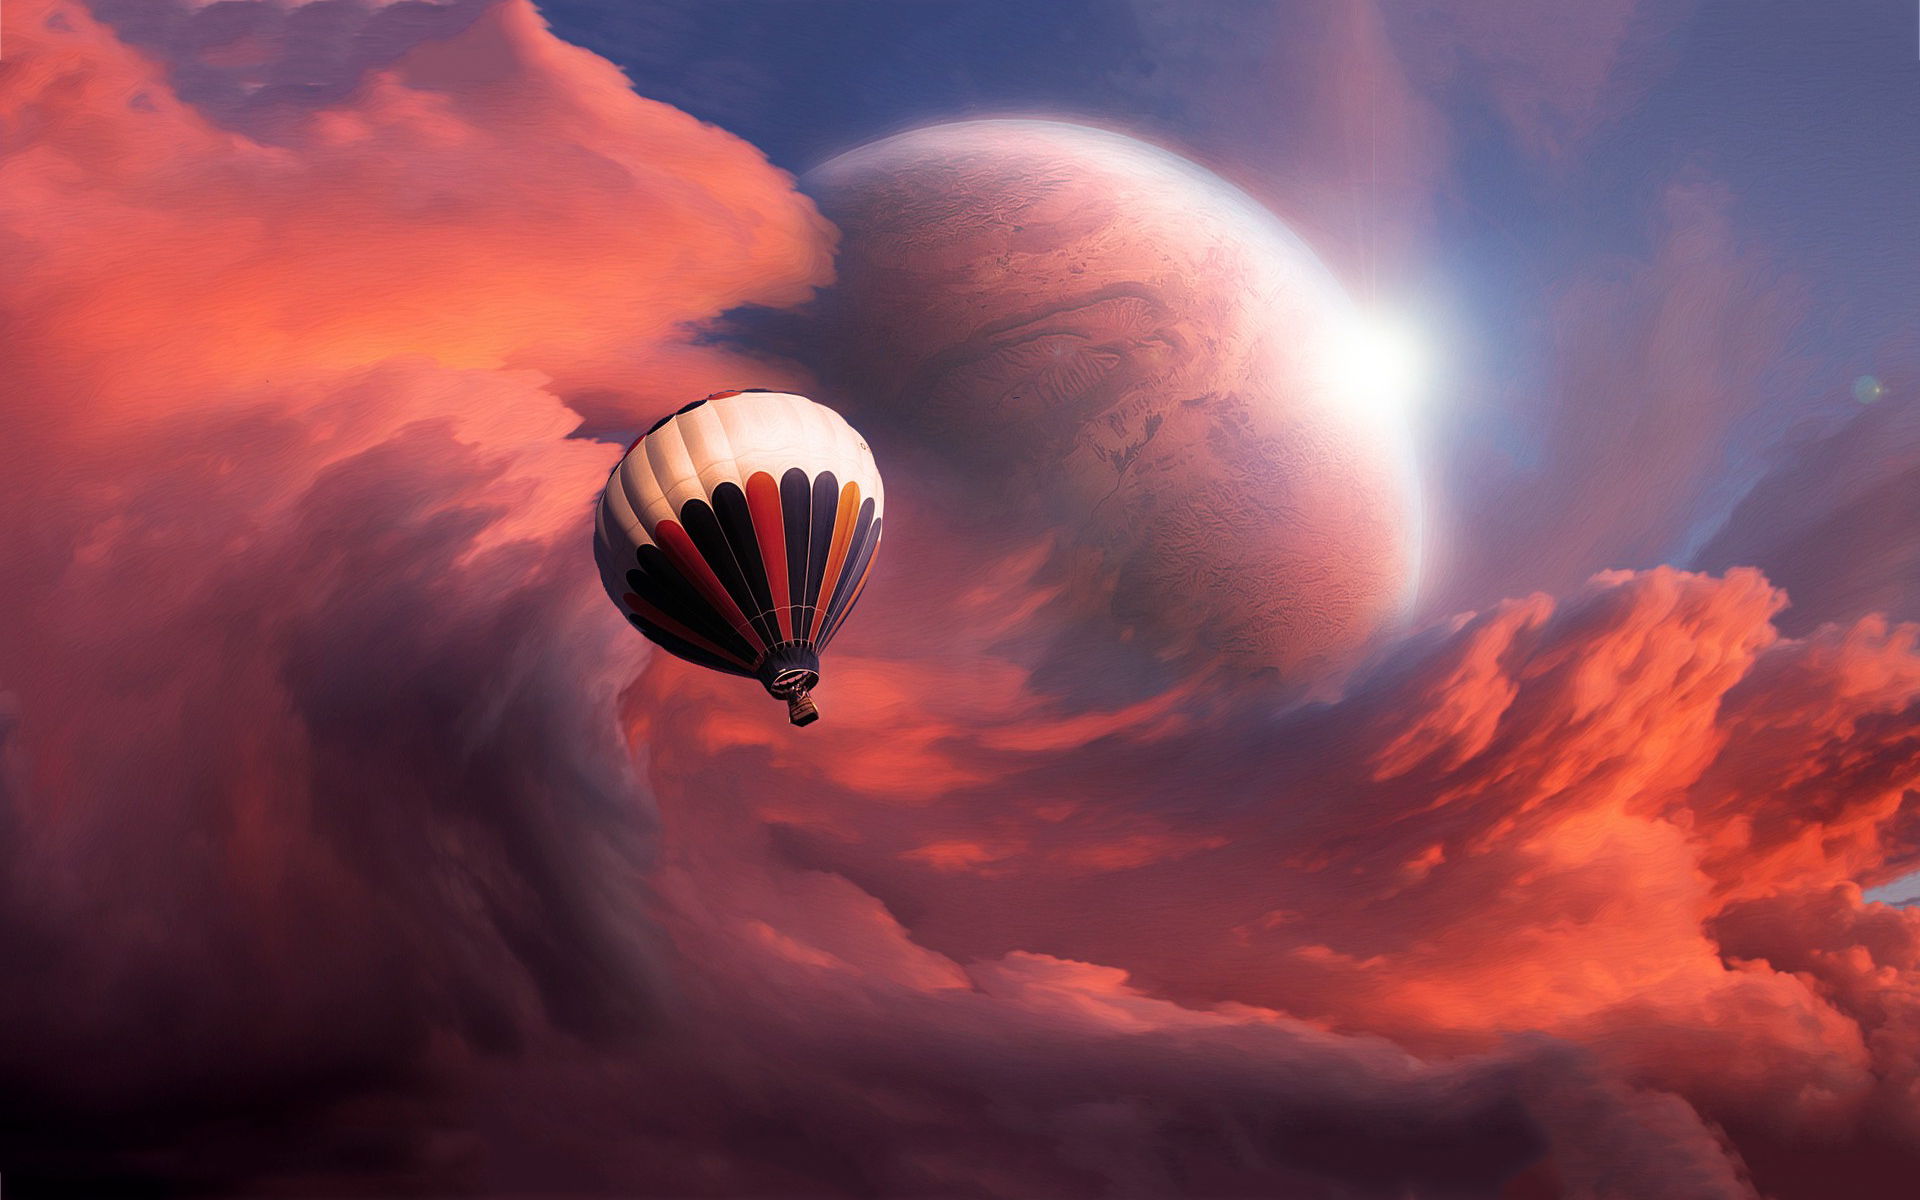 Fantasy balloon flight